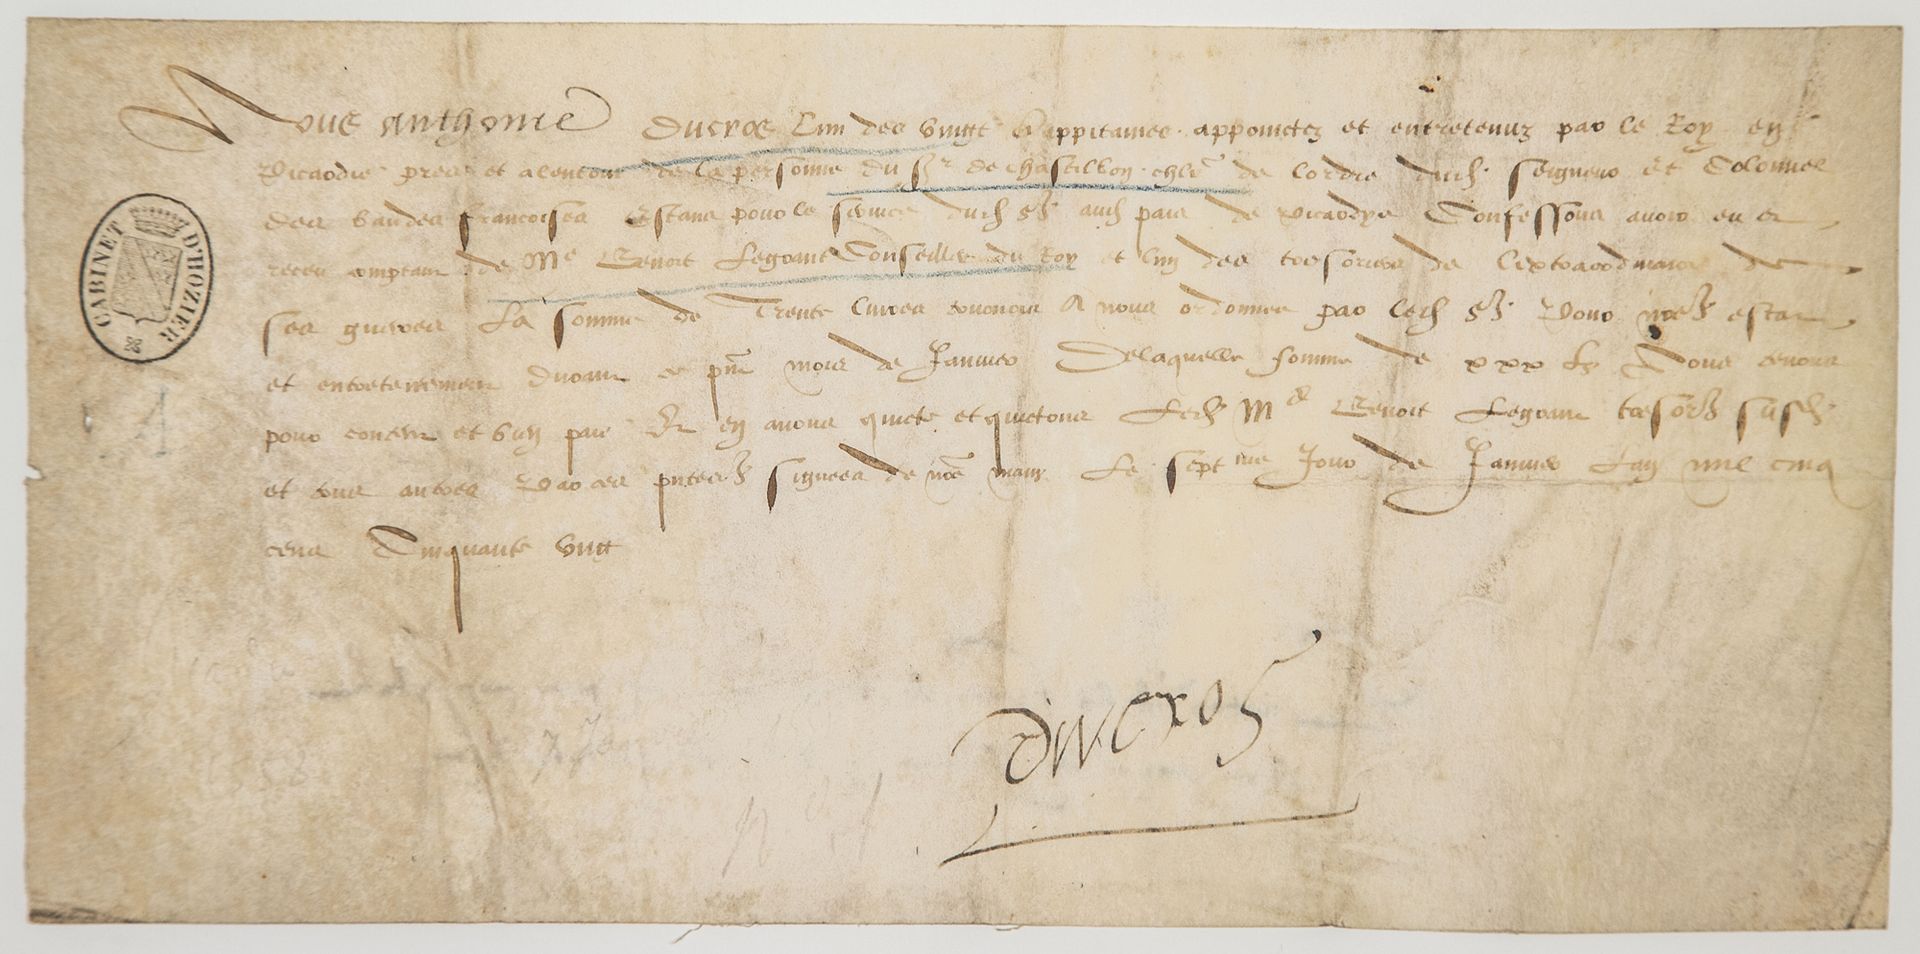 Null PICARDIE. 1558. Quittung unterzeichnet von Anthoine DUCROS, einem der zwanz&hellip;